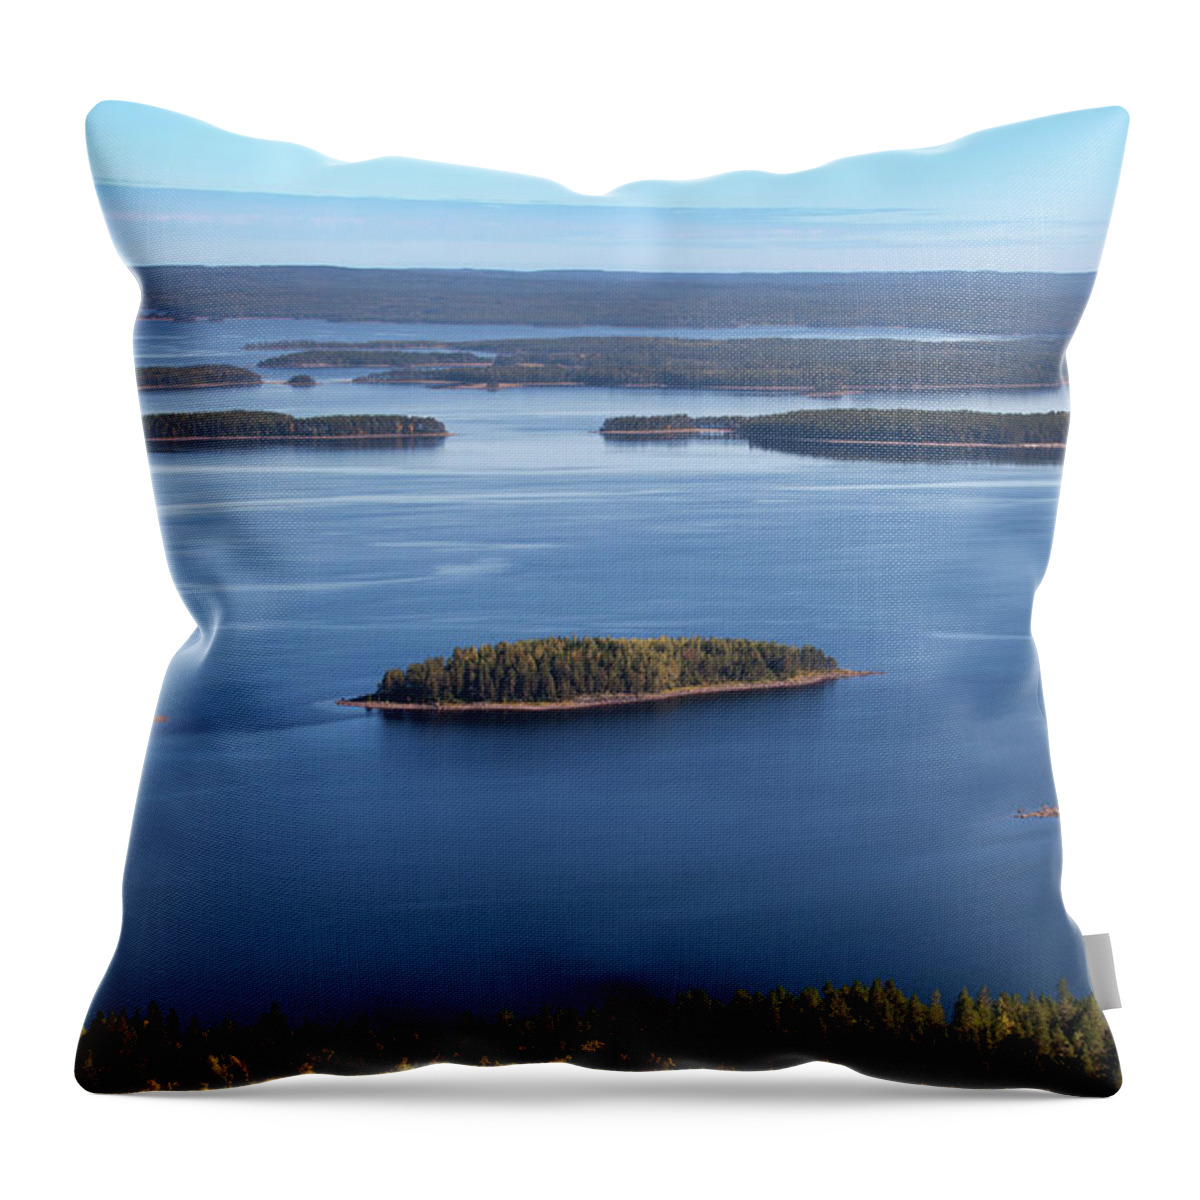 Ukko-koli Throw Pillow featuring the photograph Lake Pielinen #1 by Aivar Mikko